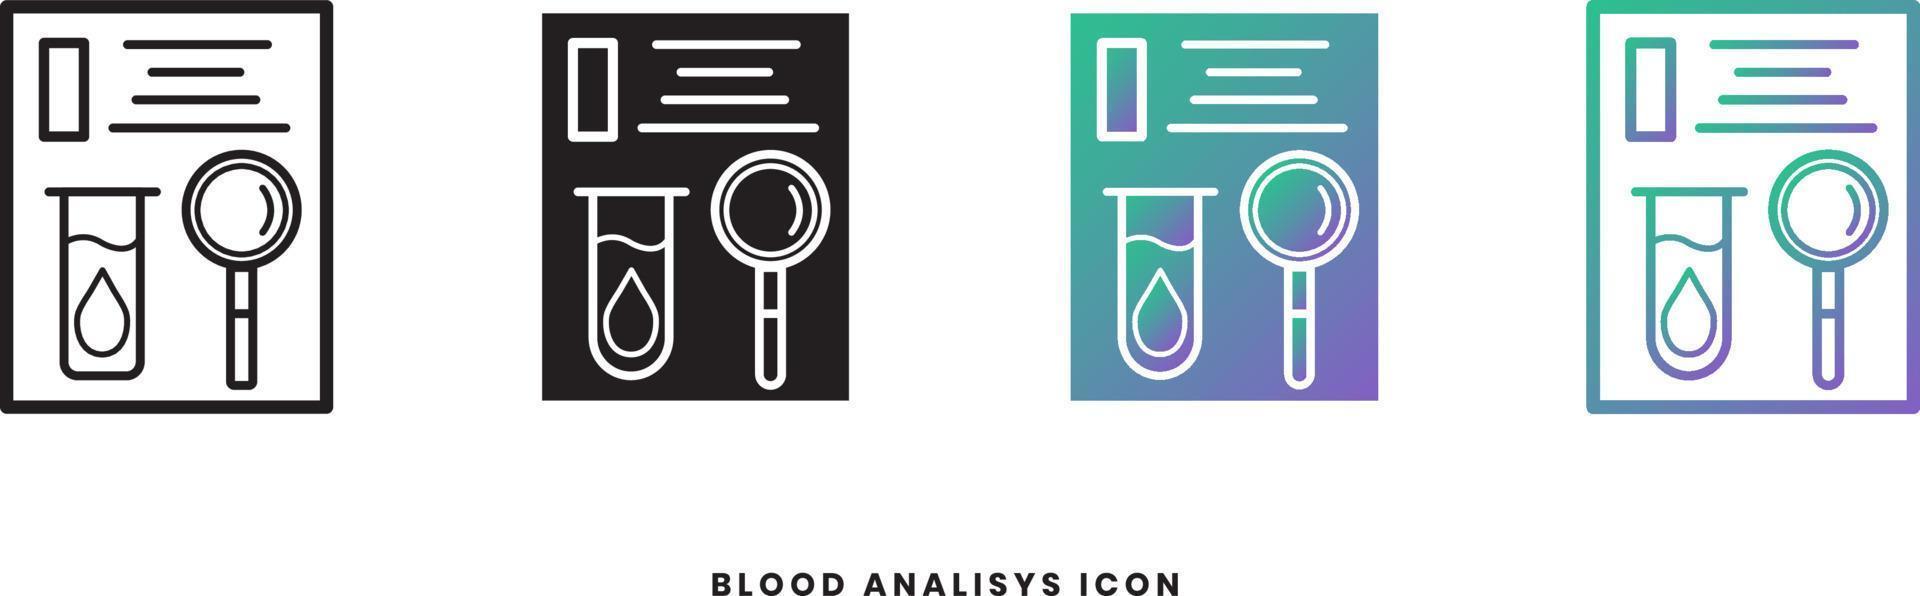 ícone de exame de sangue vetorial em estilos sólido, gradiente e linha. cores da moda. Isolado em um fundo branco vetor